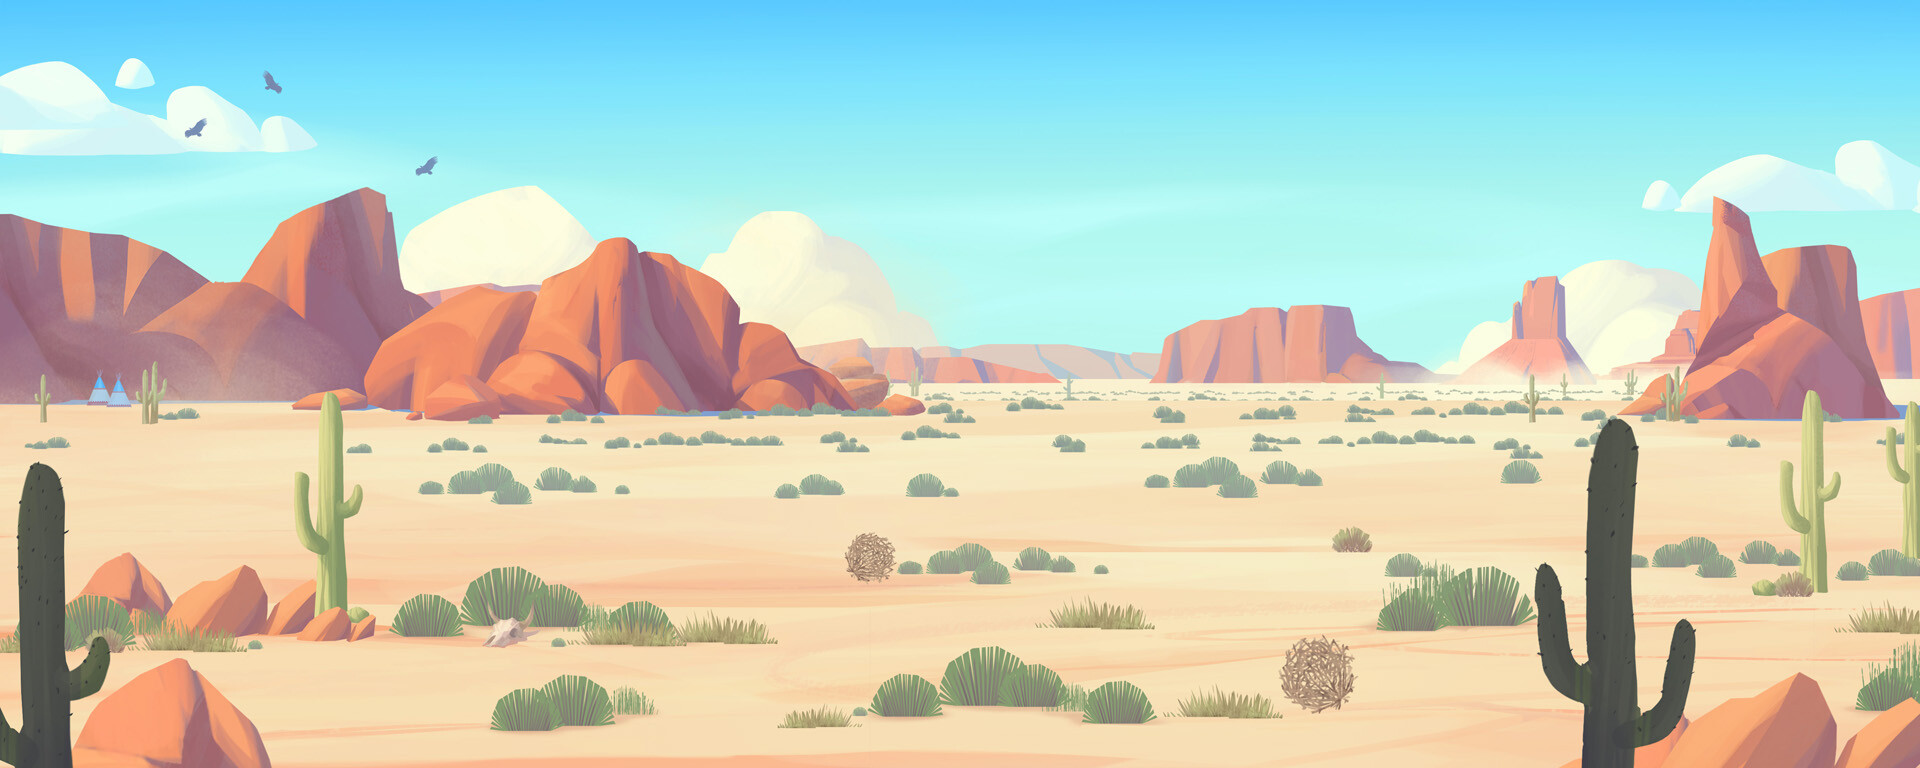 Pawel Fotek, Desert background: Khám phá tài năng nhiếp ảnh của Pawel Fotek với hình nền sa mạc đến từng chi tiết. Bộ sưu tập độc đáo và đầy màu sắc sẽ làm bạn trầm trồ và muốn đến thăm những nơi đó ngay lập tức. Tải xuống ngay để có một không gian làm việc đầy năng lượng.